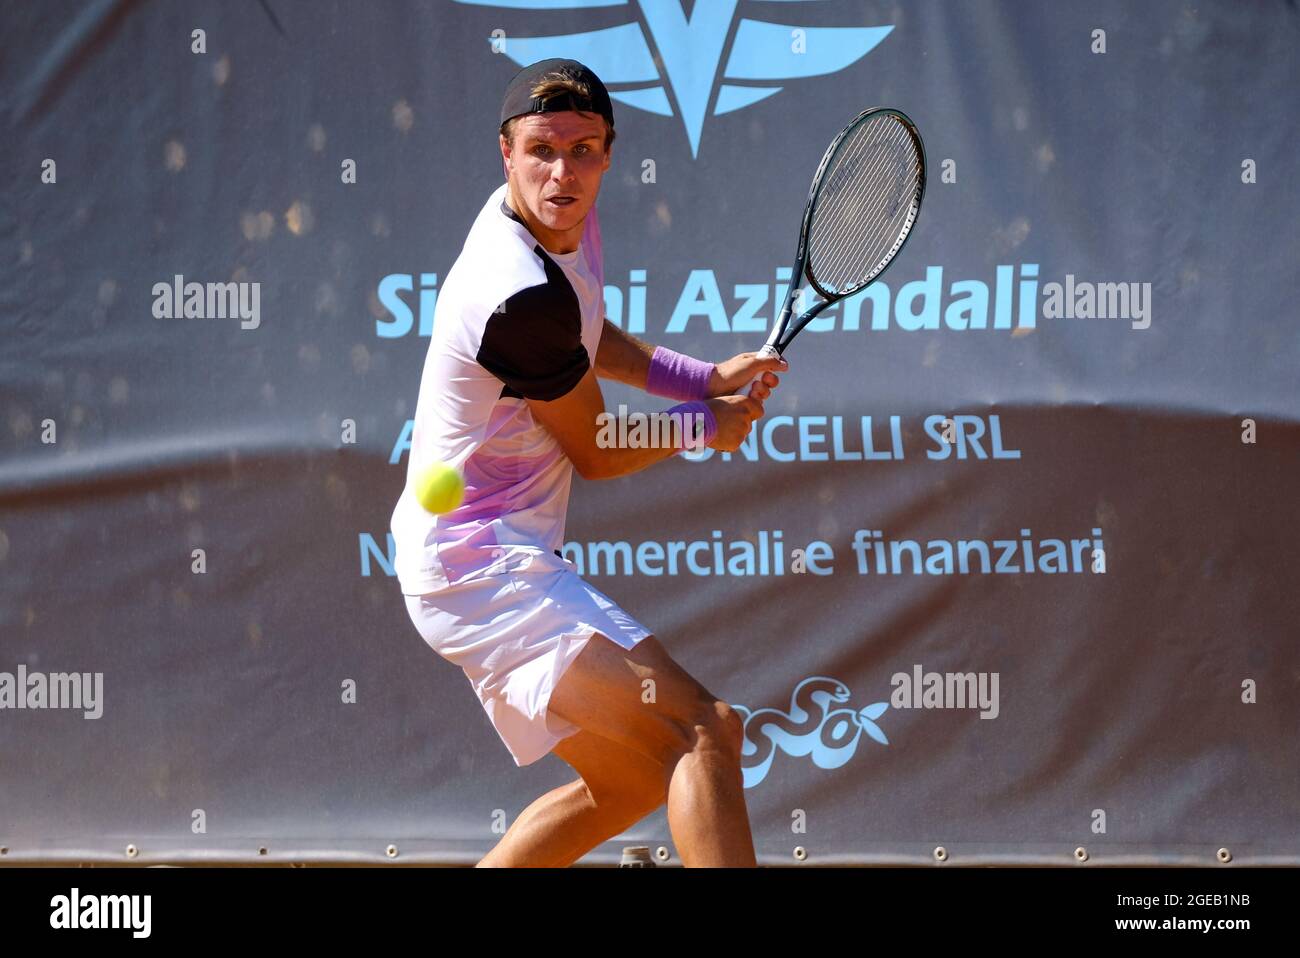 Дмитрий попко теннис фото